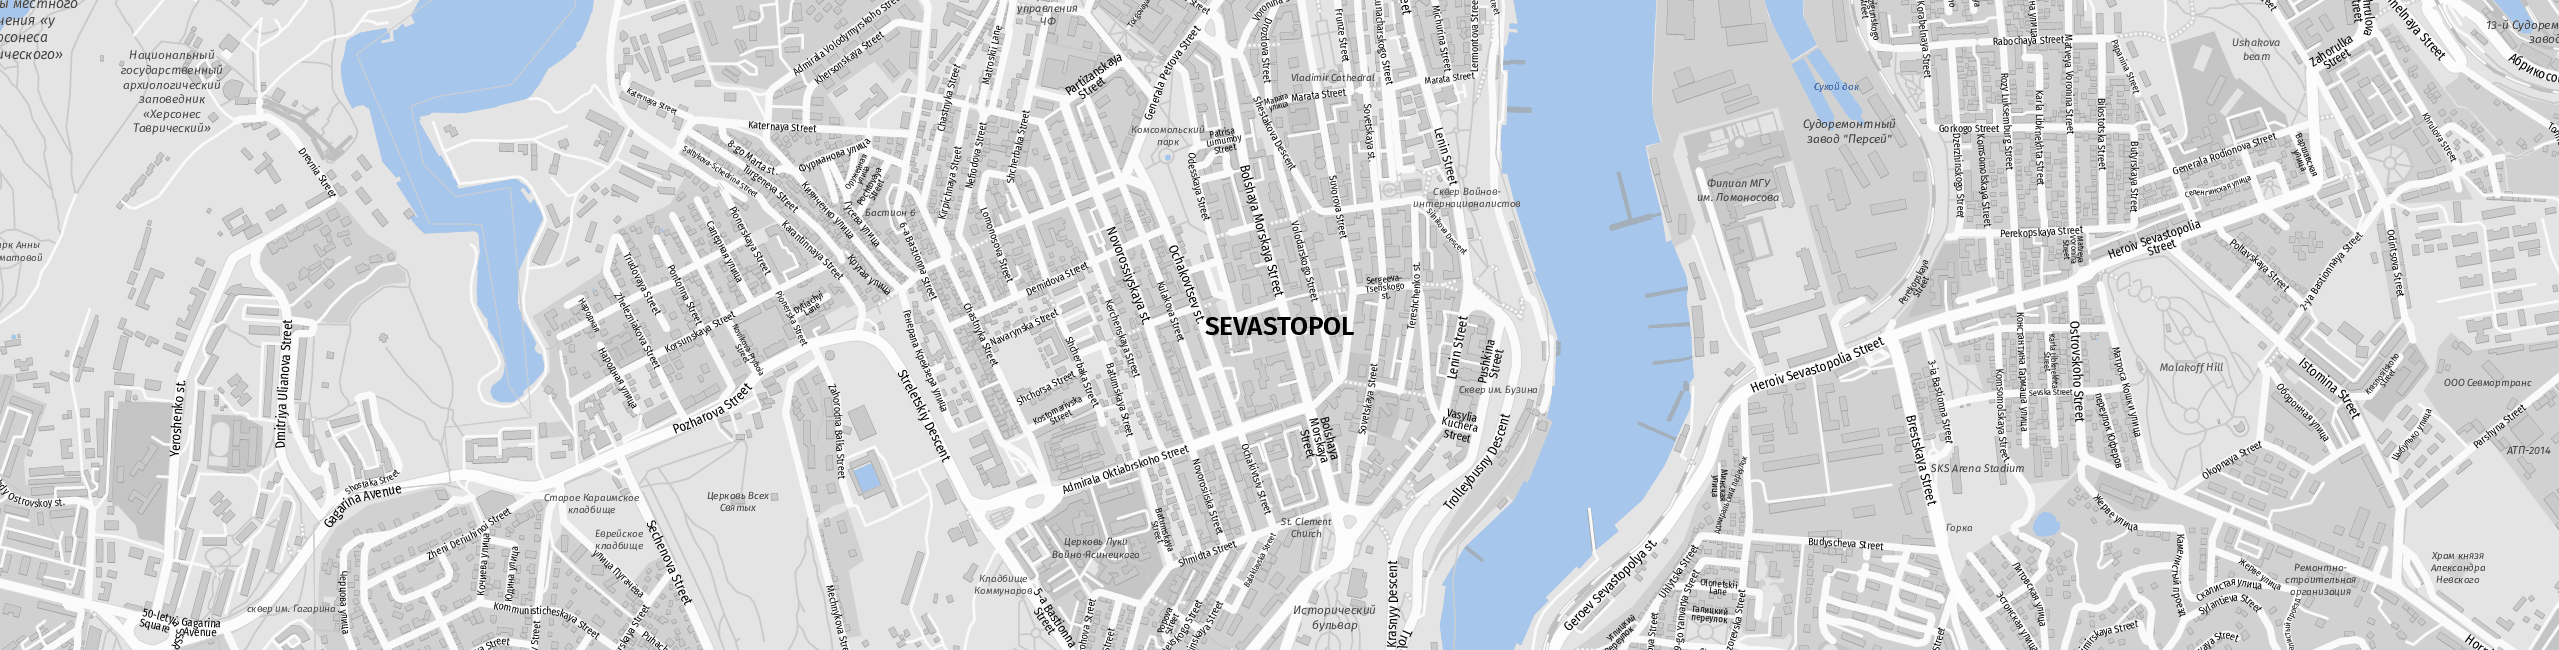 Stadtplan Sewastopol zum Downloaden.